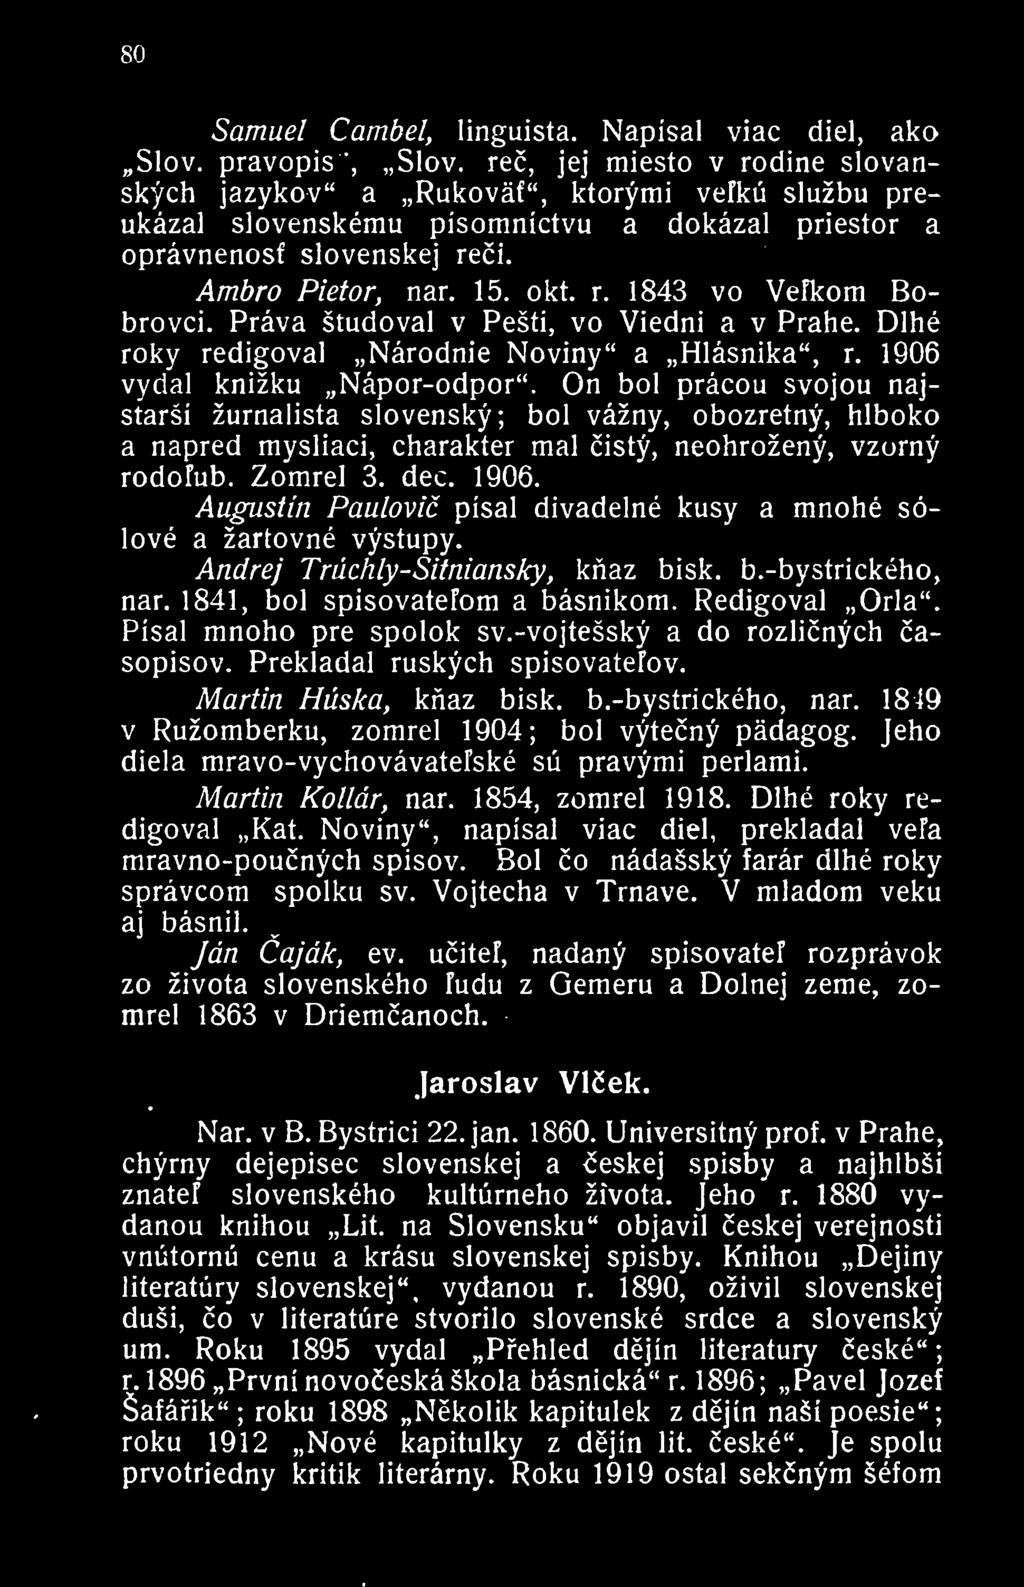 Prava studoval v Pesti, vo Viedni a v Prahe. Dlhe roky redigova] Narodnie Noviny" a Hlasnika", r. 1906 vydal knizku Napor-odpor".